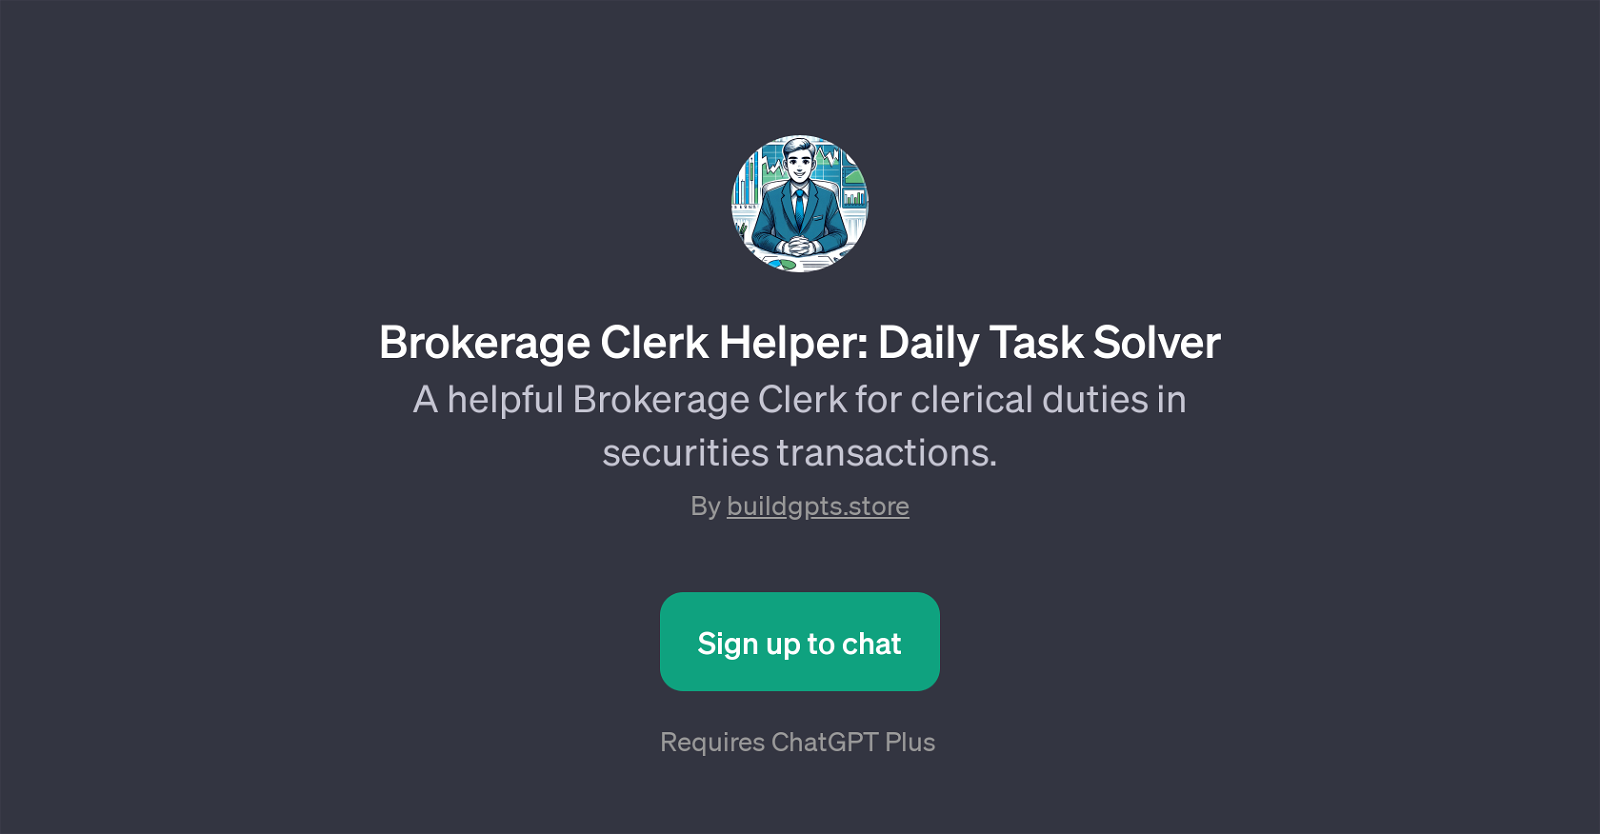 Brokerage Clerk Helper: Daily Task Solver website